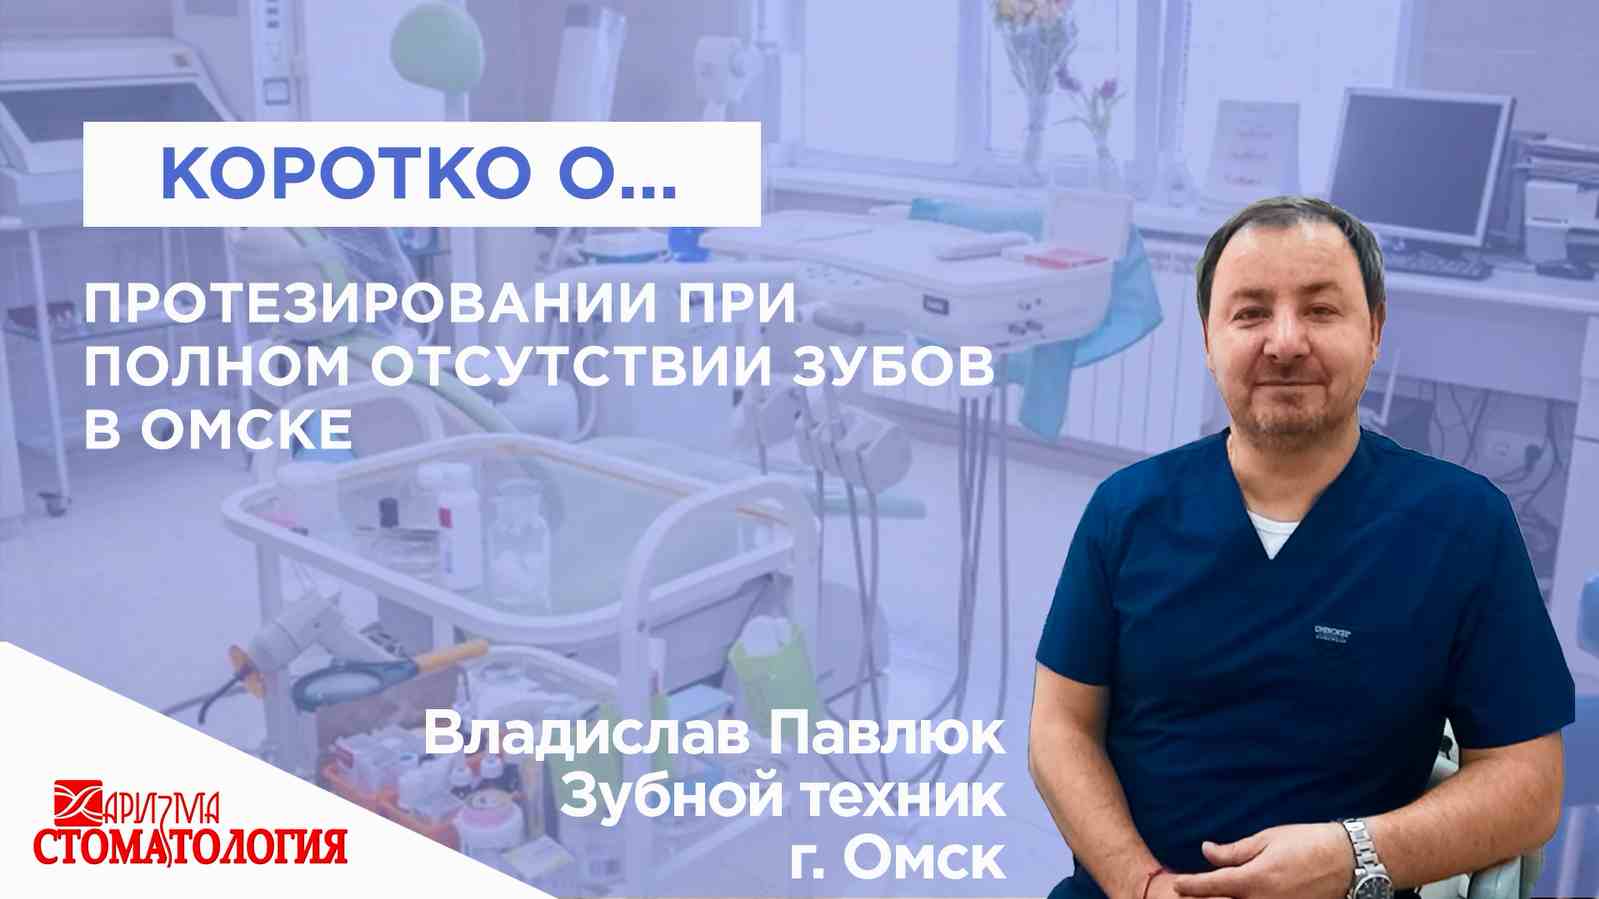 Протезирование при полном отсутствии зубов в Омске по доступной цене